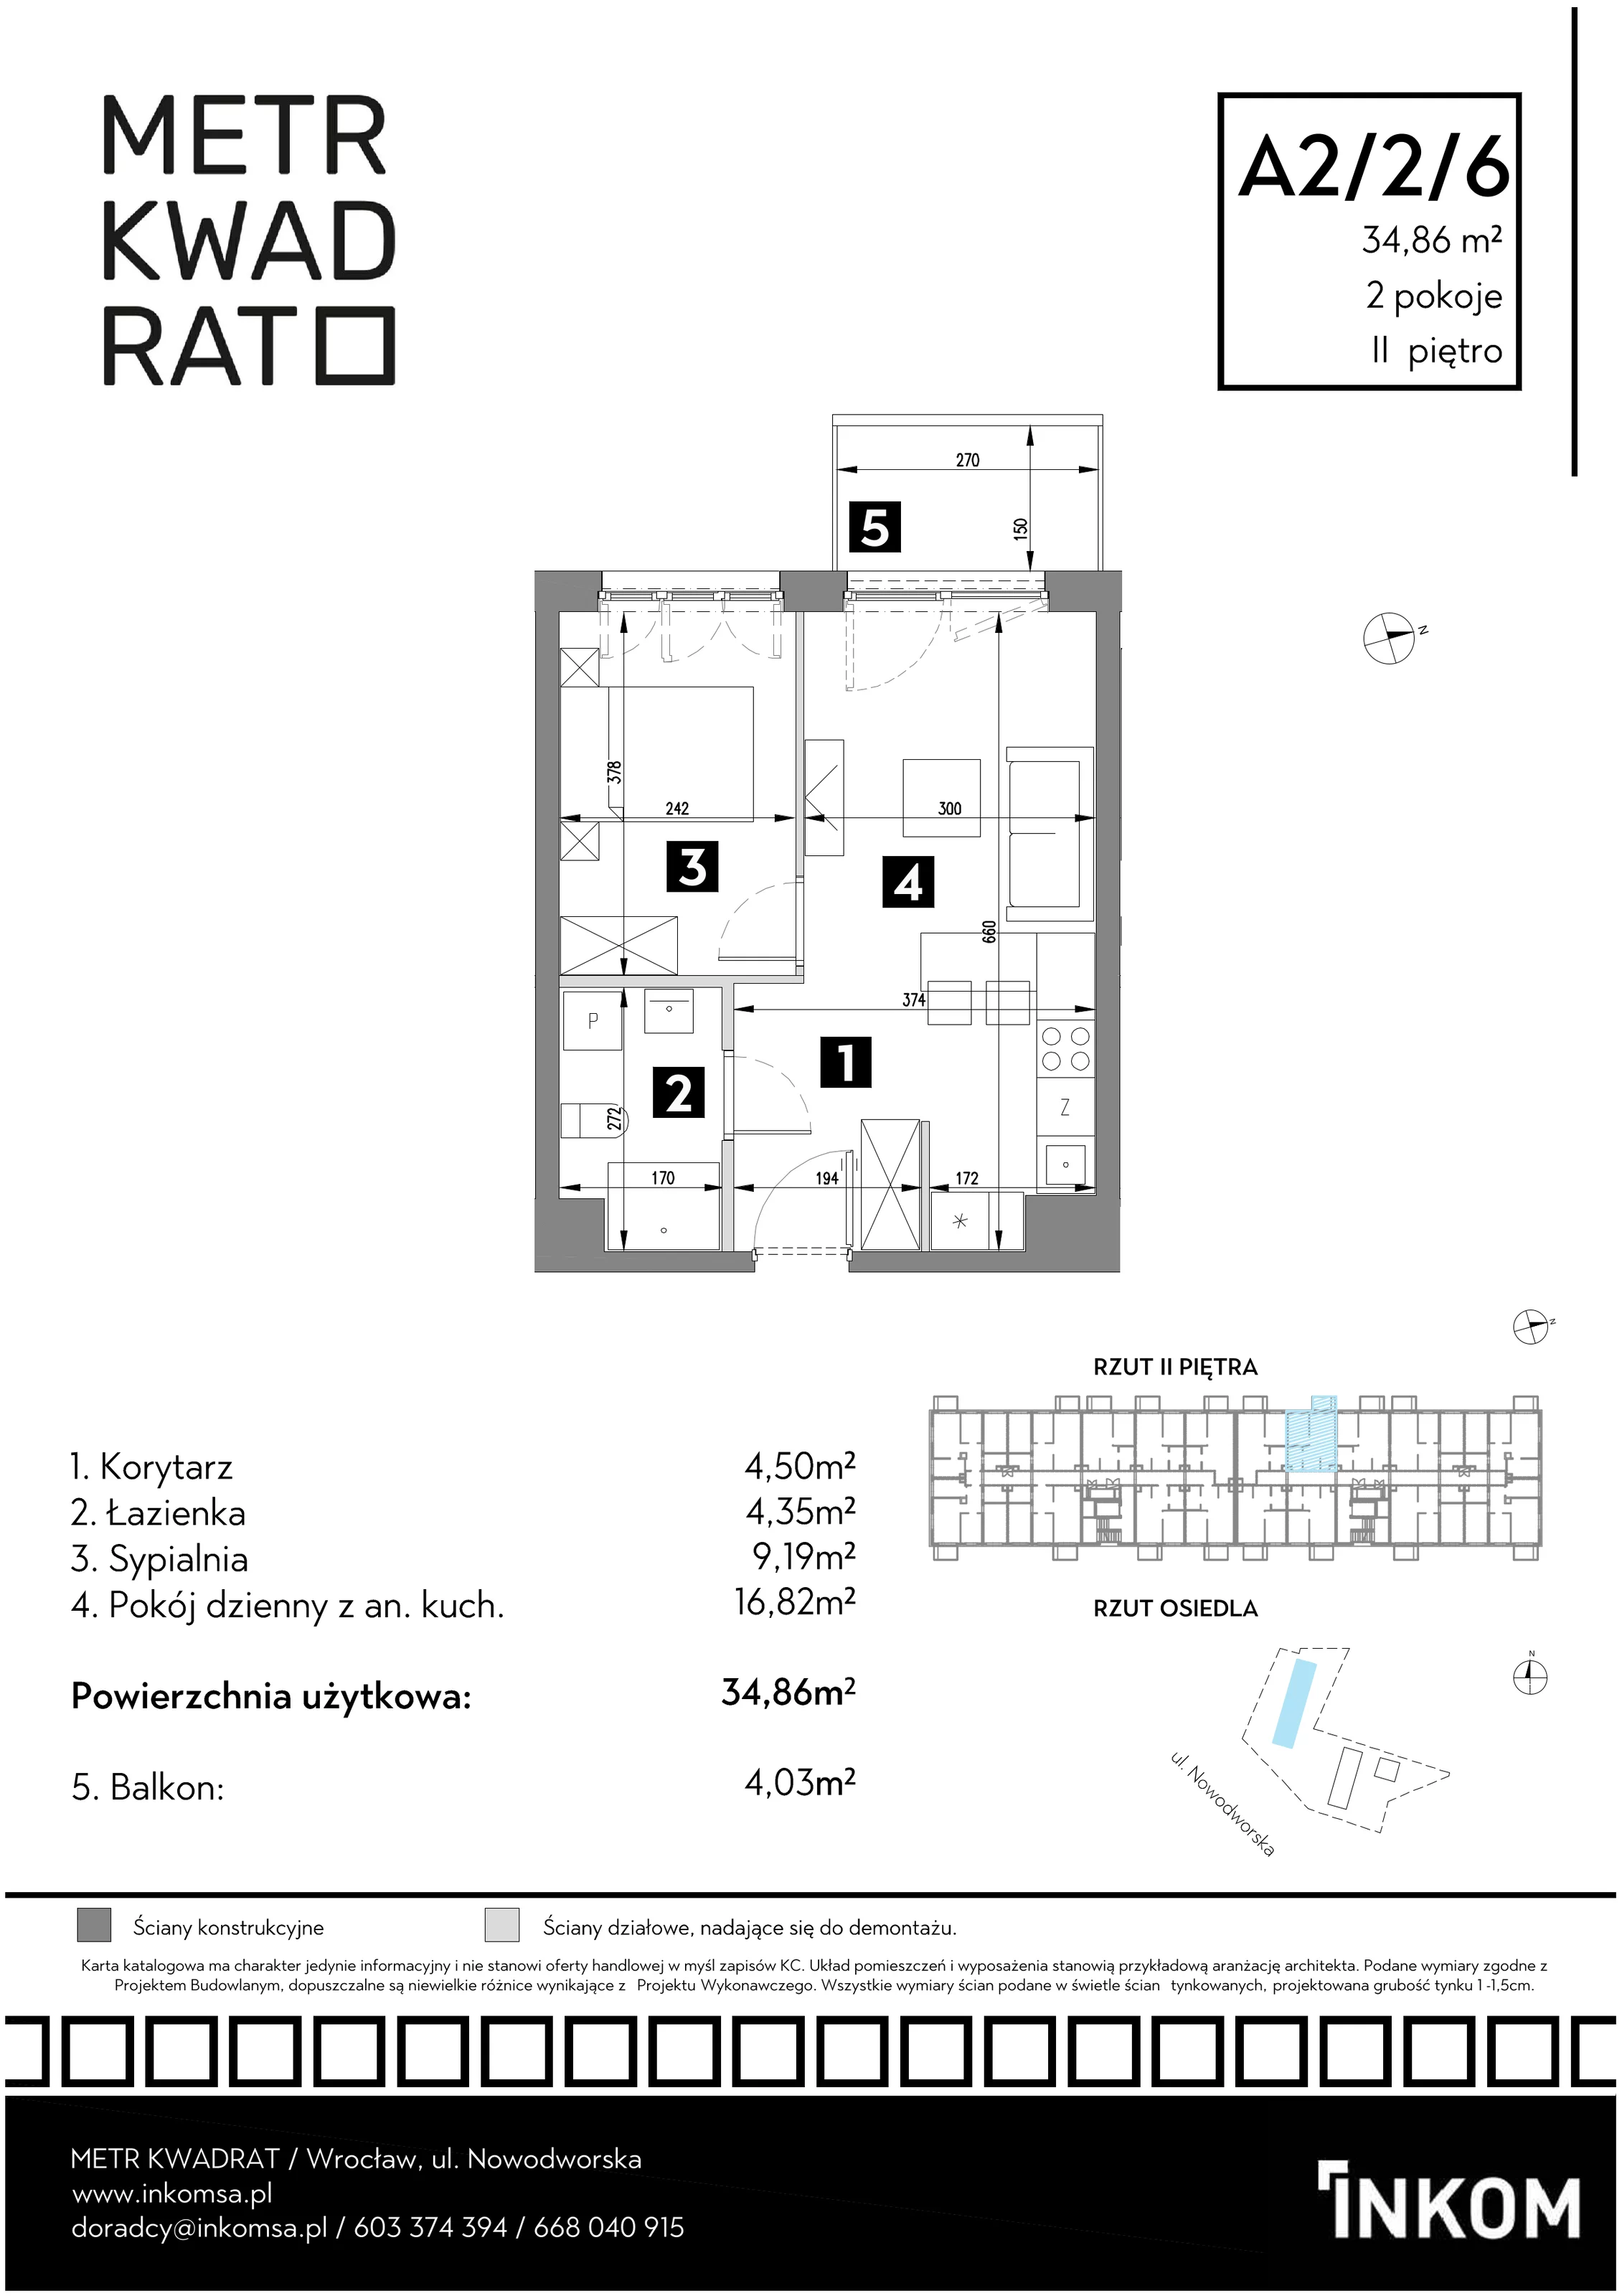 Mieszkanie 34,86 m², piętro 2, oferta nr A2/2/6, Metr Kwadrat, Wrocław, Nowy Dwór, ul. Nowodworska 17B